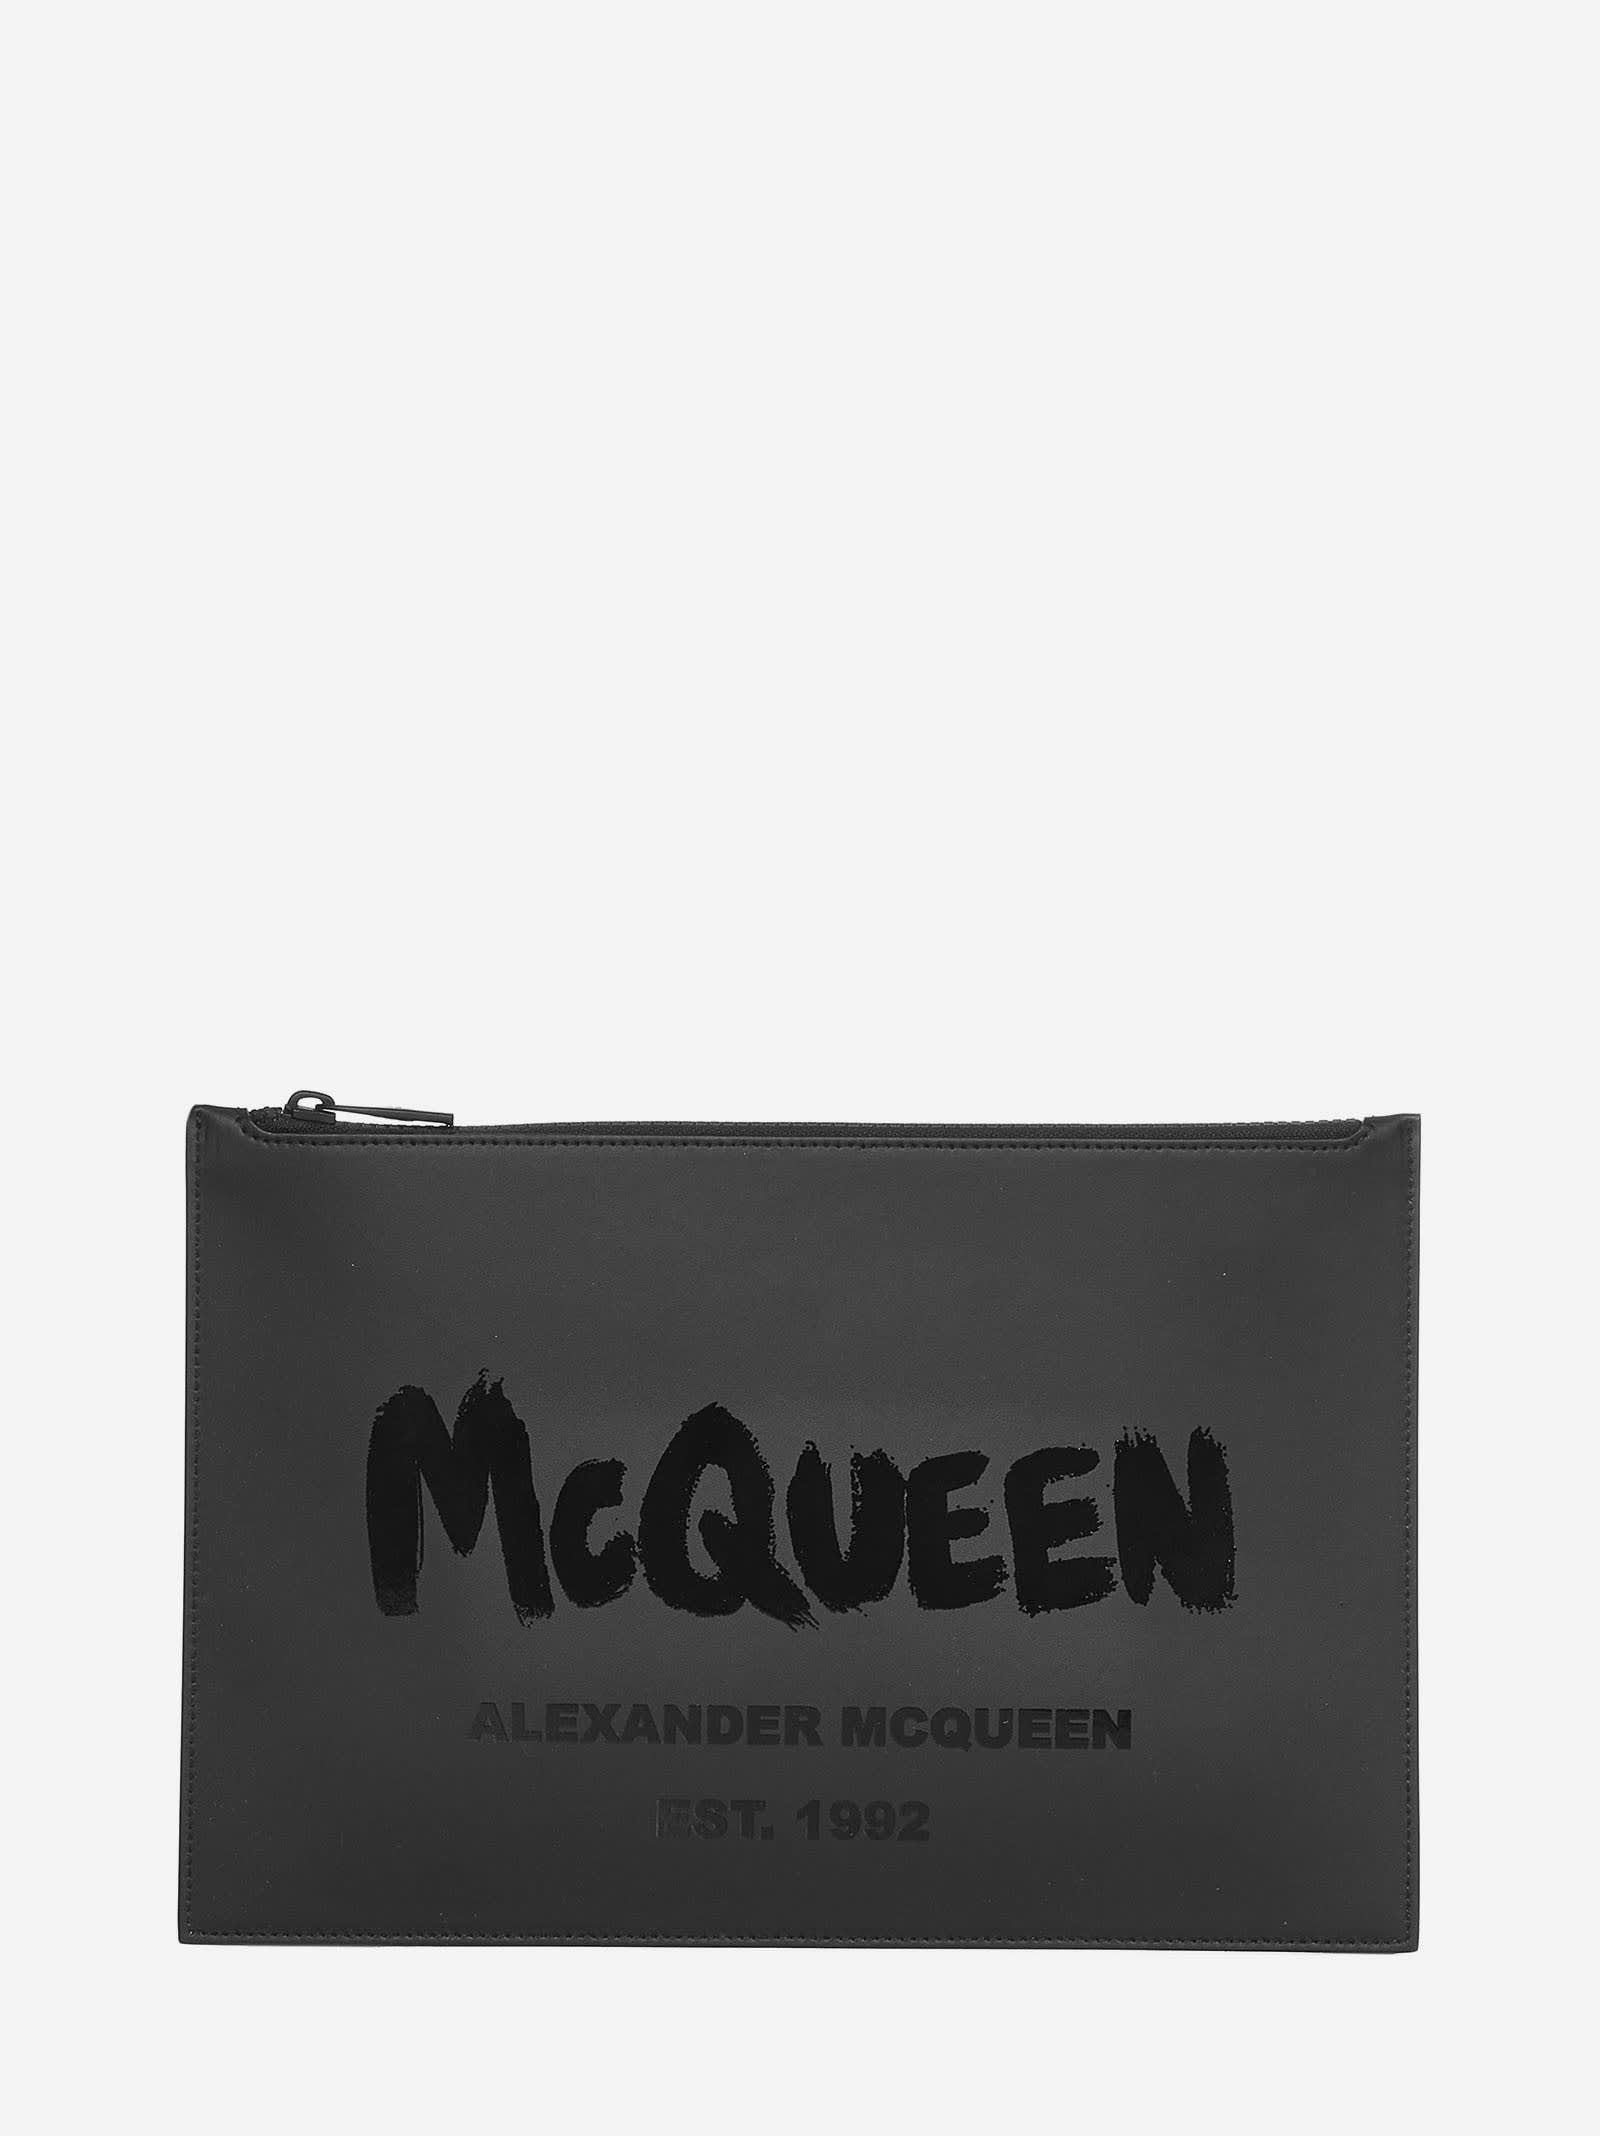 Alexander Mcqueen Clutch In Black